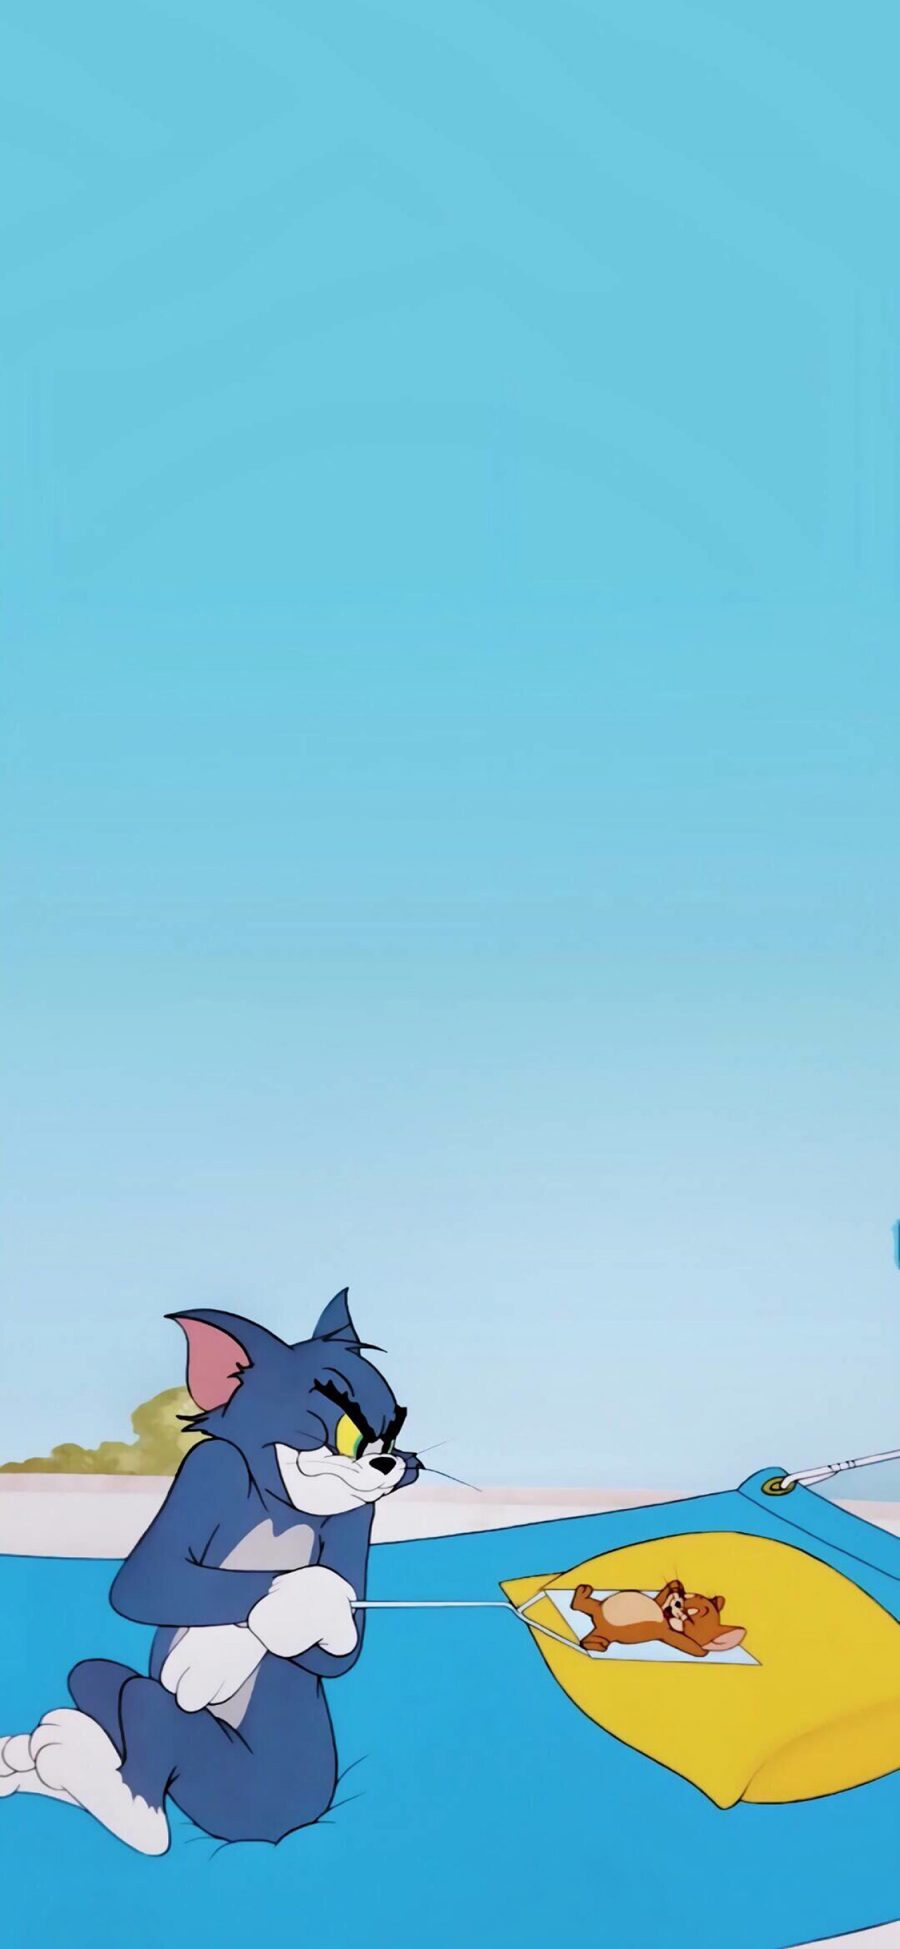 [2436×1125]美国 Tom and Jerry 猫和老鼠 动画 苹果手机动漫壁纸图片